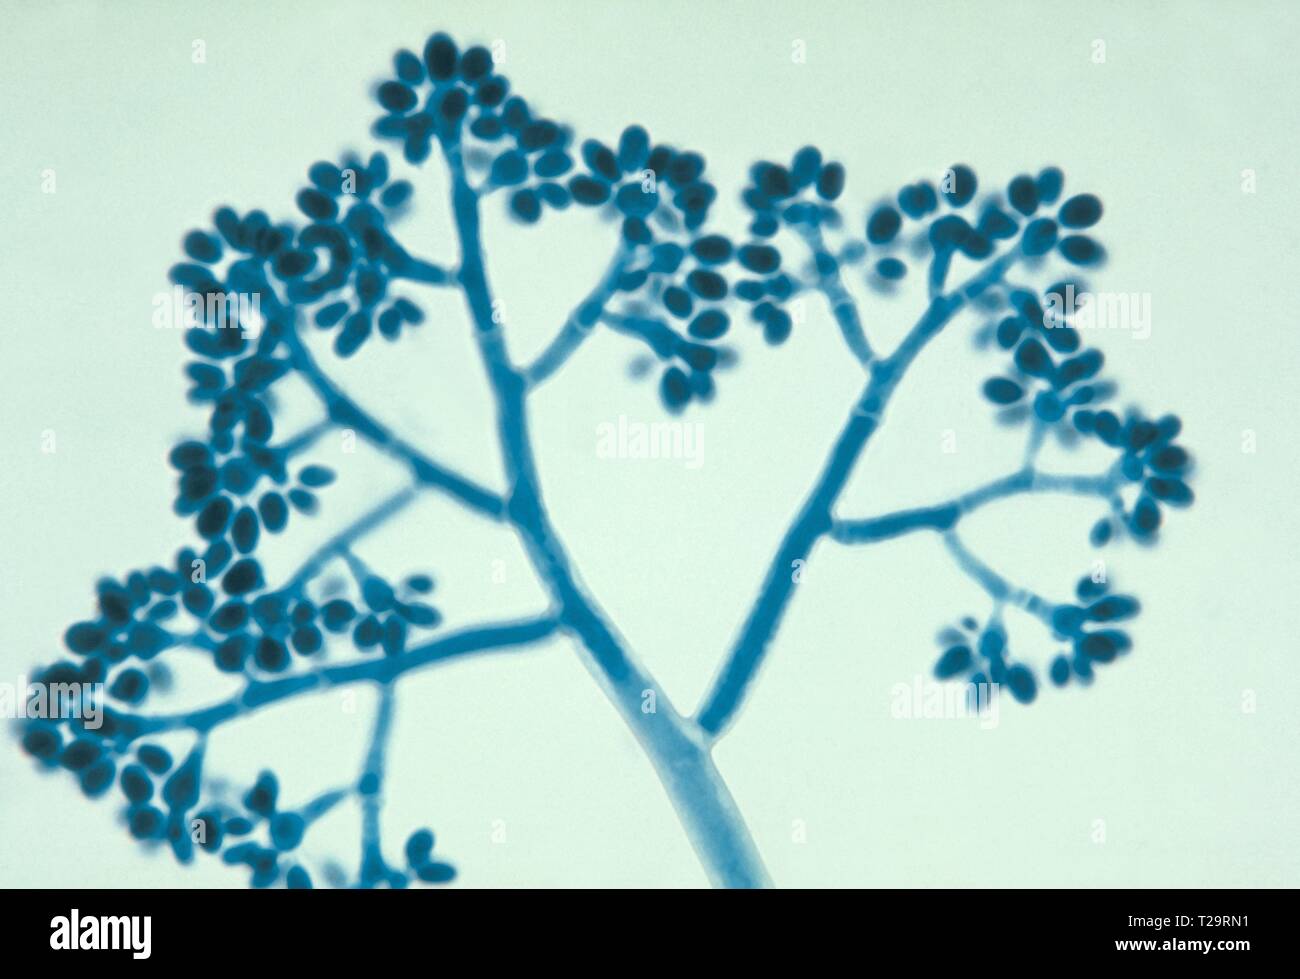 Photomicrograph eines Botrytis Arten Pilze (Grauschimmel), Cluster von Asexuellen spore - mit Konidien, 1955. Bild mit freundlicher Genehmigung Zentren für Krankheitskontrolle und Prävention (CDC)/Dr Lucille K. Georg. () Stockfoto